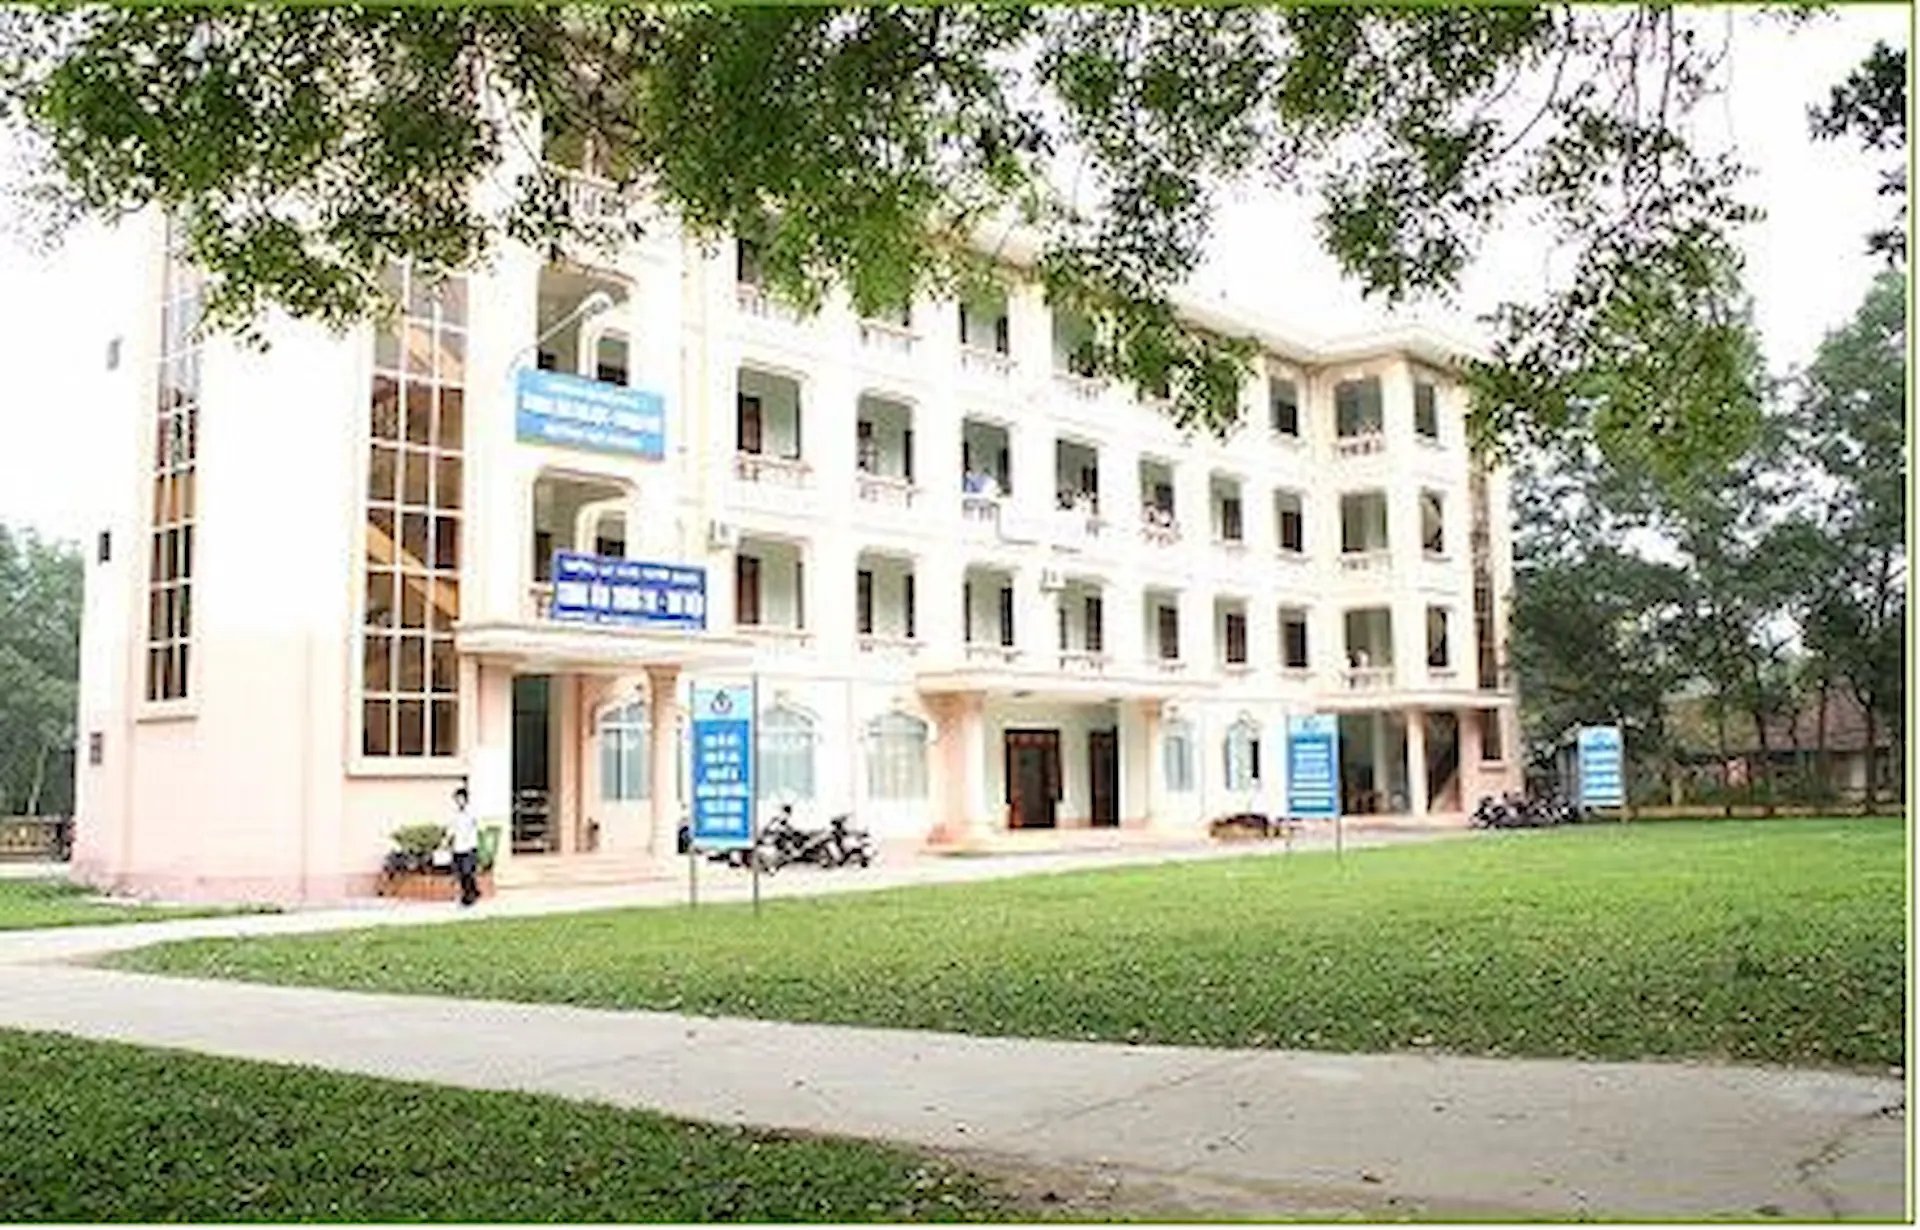 Đại học Tân Trào